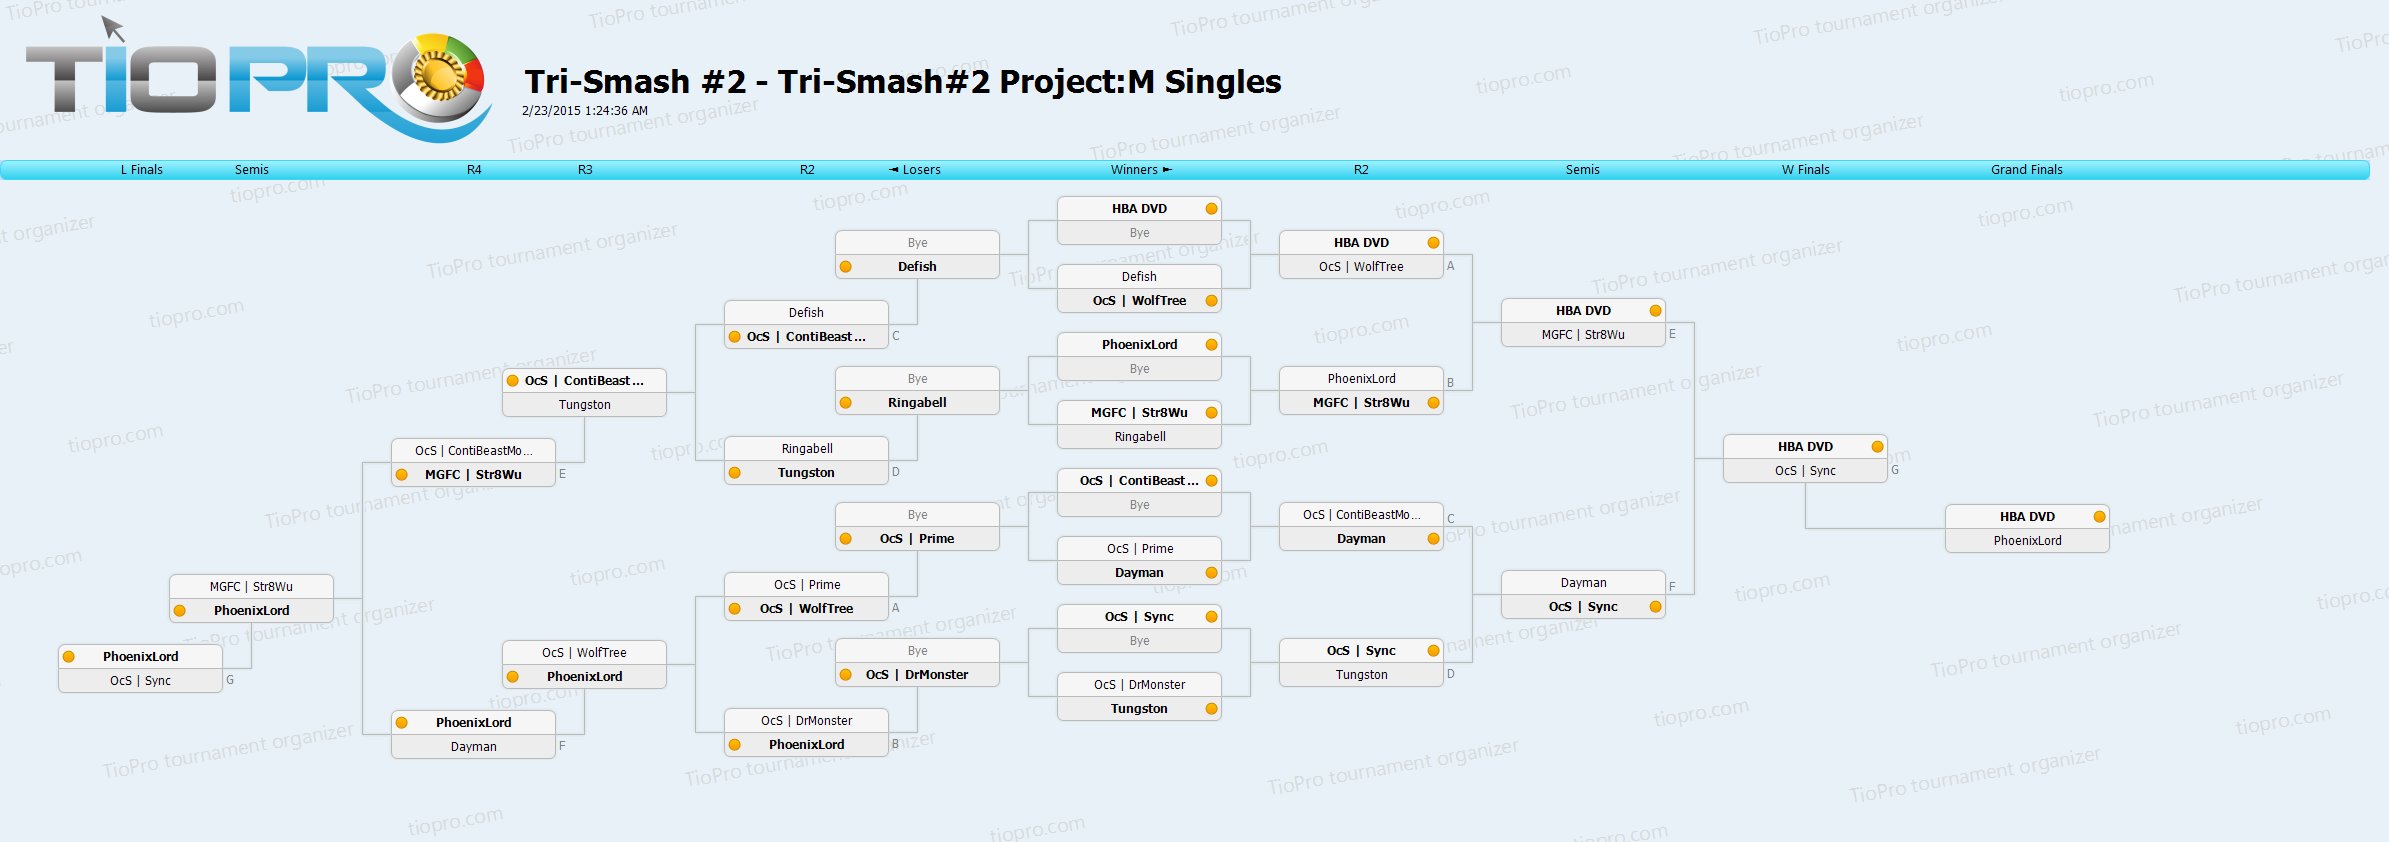 Tri-Smash#2 Project:M Singles